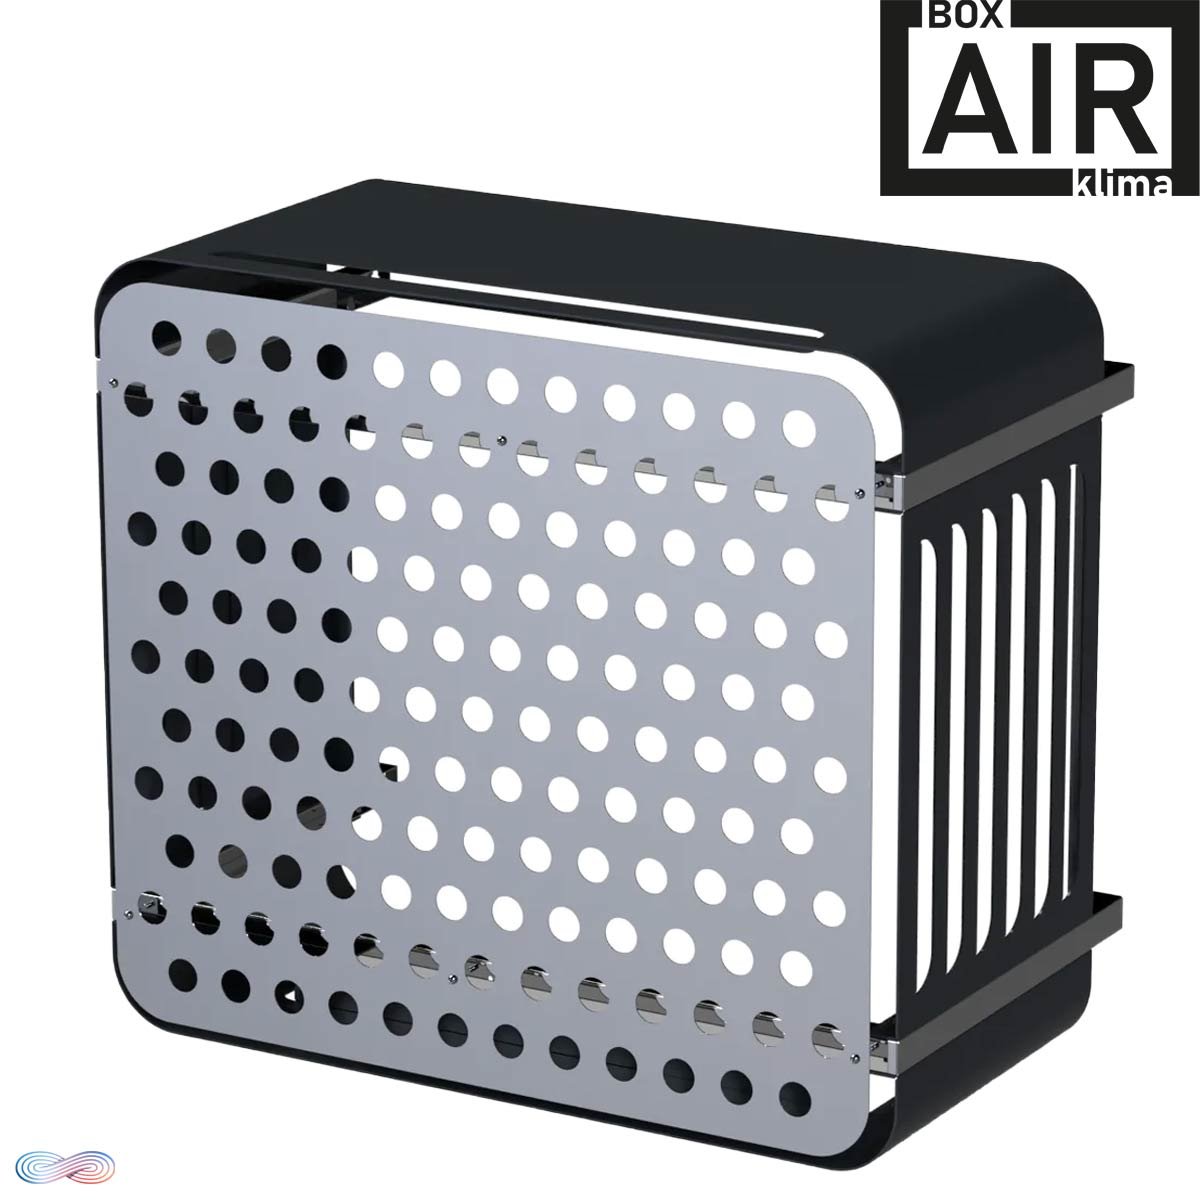 Box Air Klima Cover Hi-Fi Klimaanlagen-Wärmepumpen-Abdeckung... von BOX AIR KLIMA